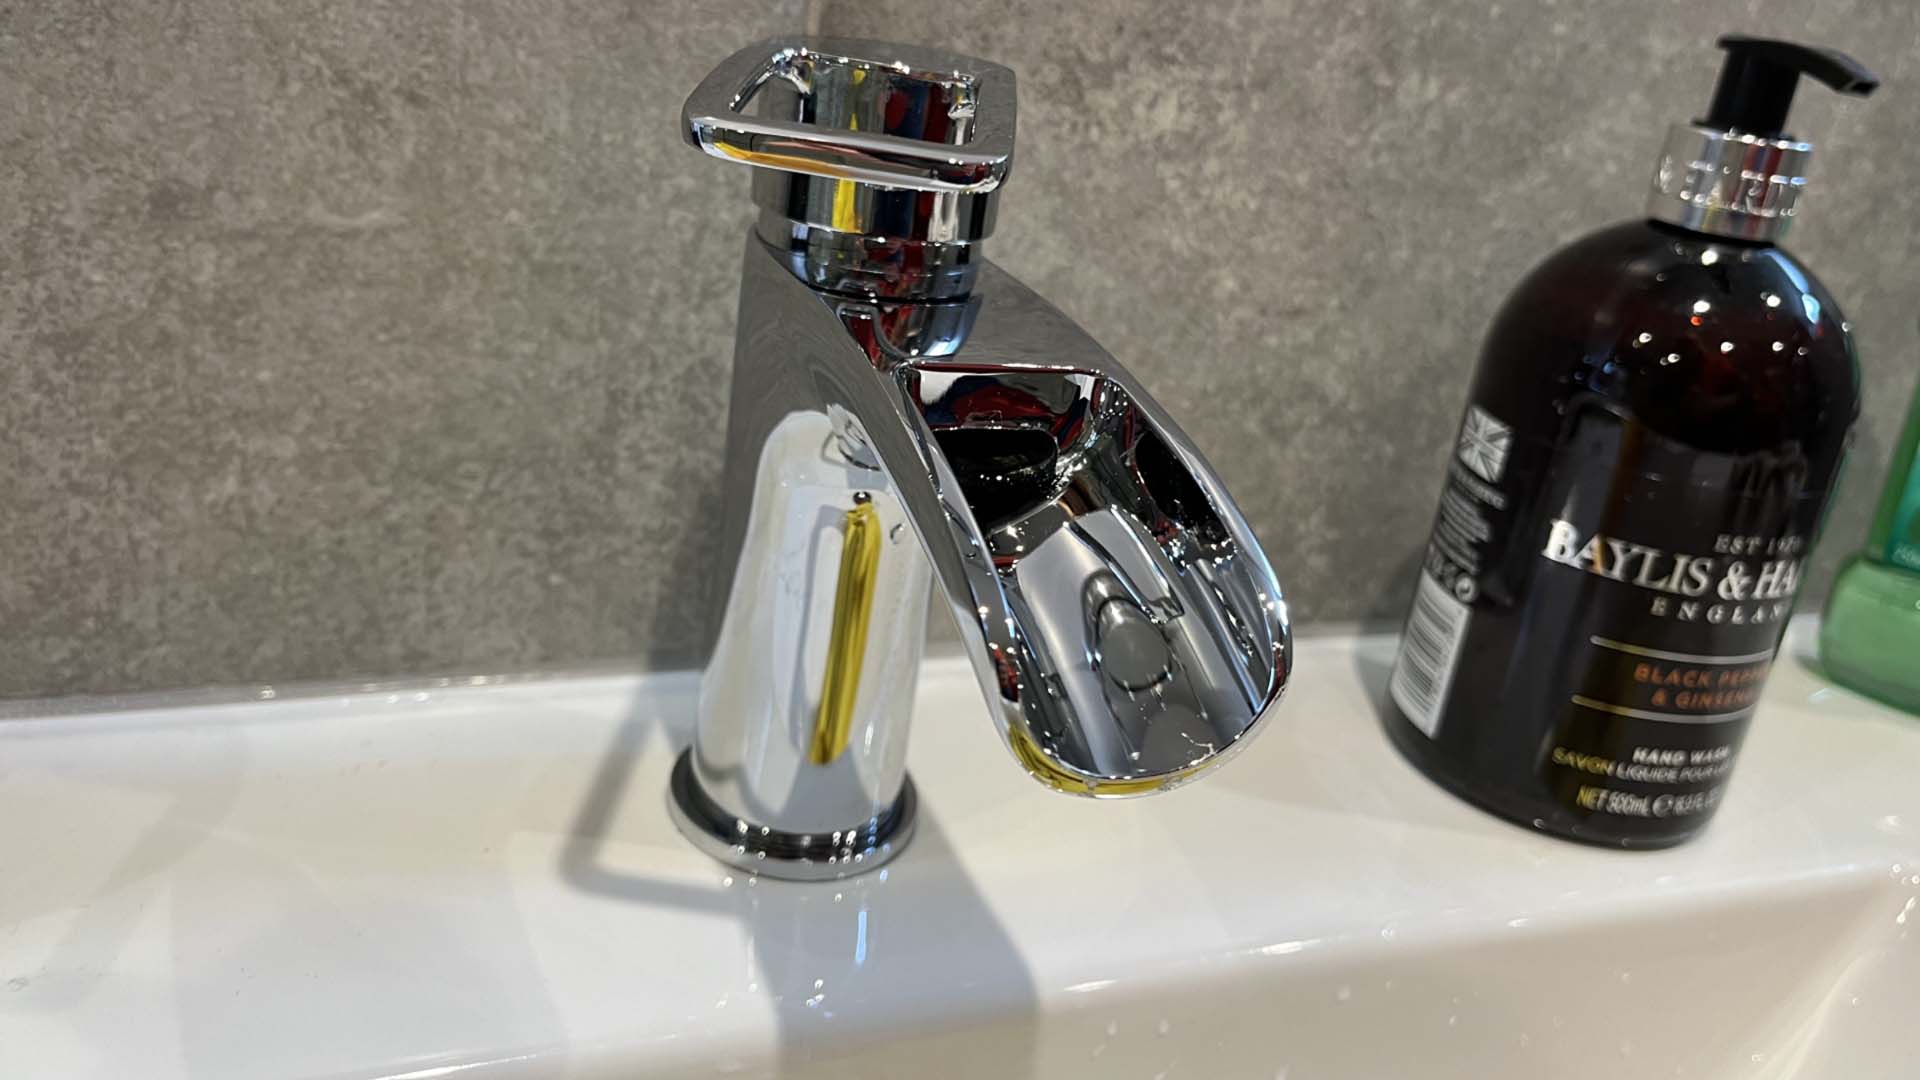 A clean tap